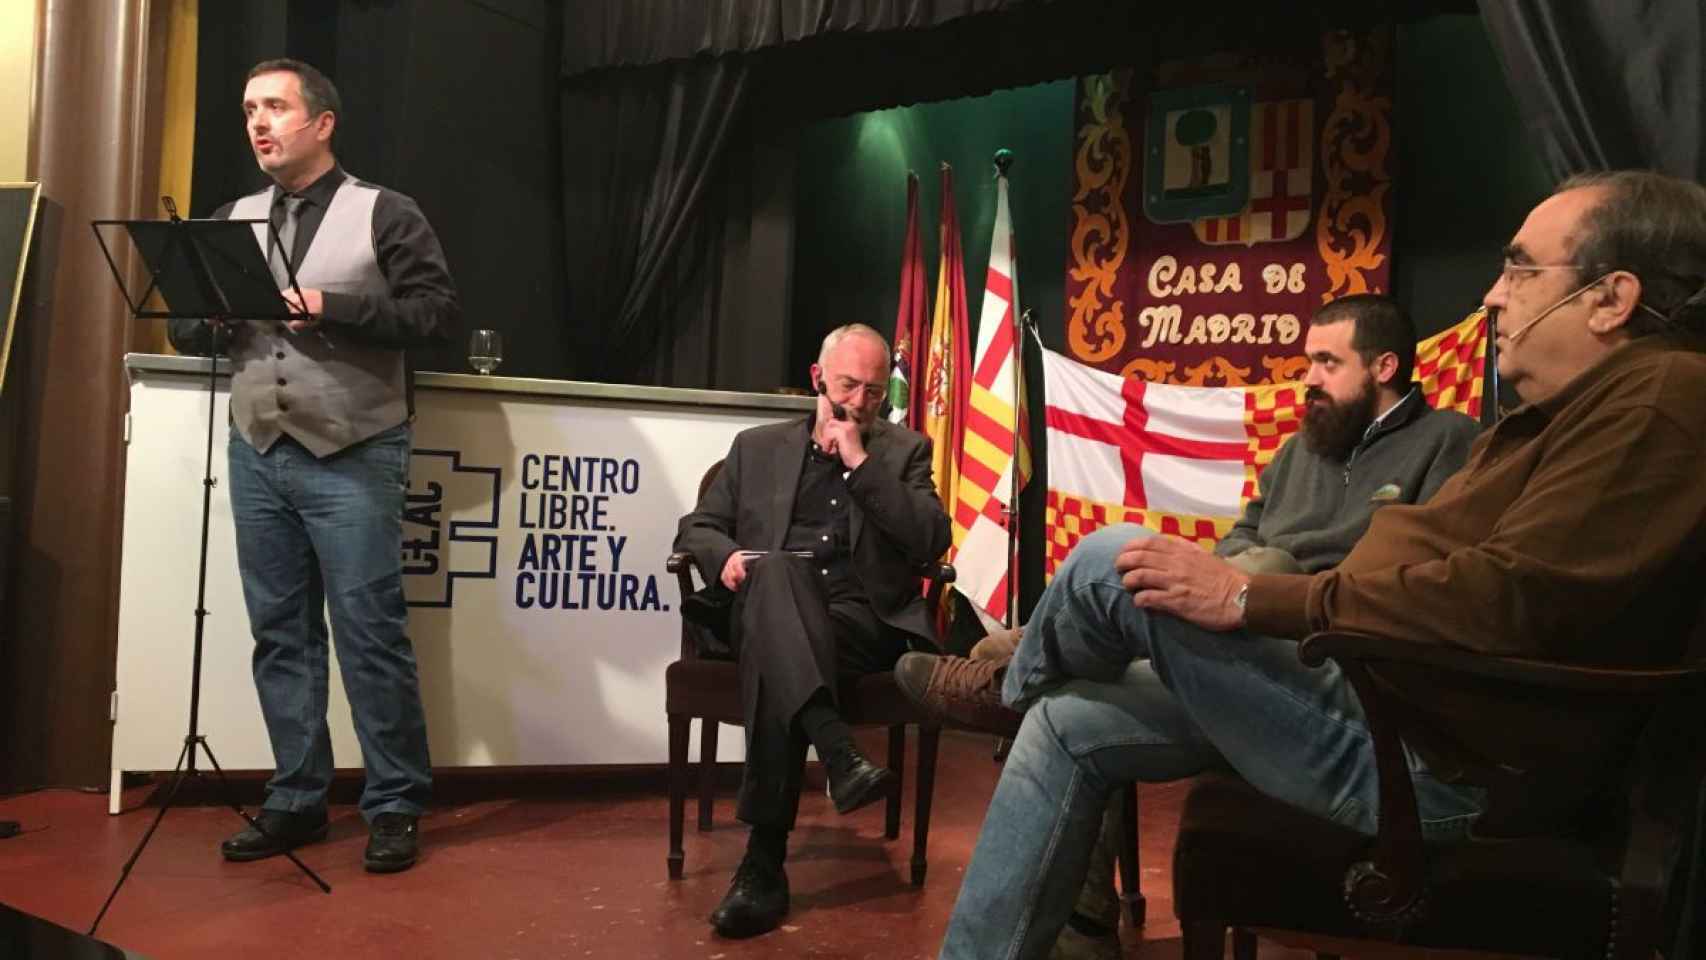 De izquierda a derecha: Pau Guix, Pablo Planas, Jaume Vives y Ramón de España, durante el evento censurado de Tabarnia / X. A.